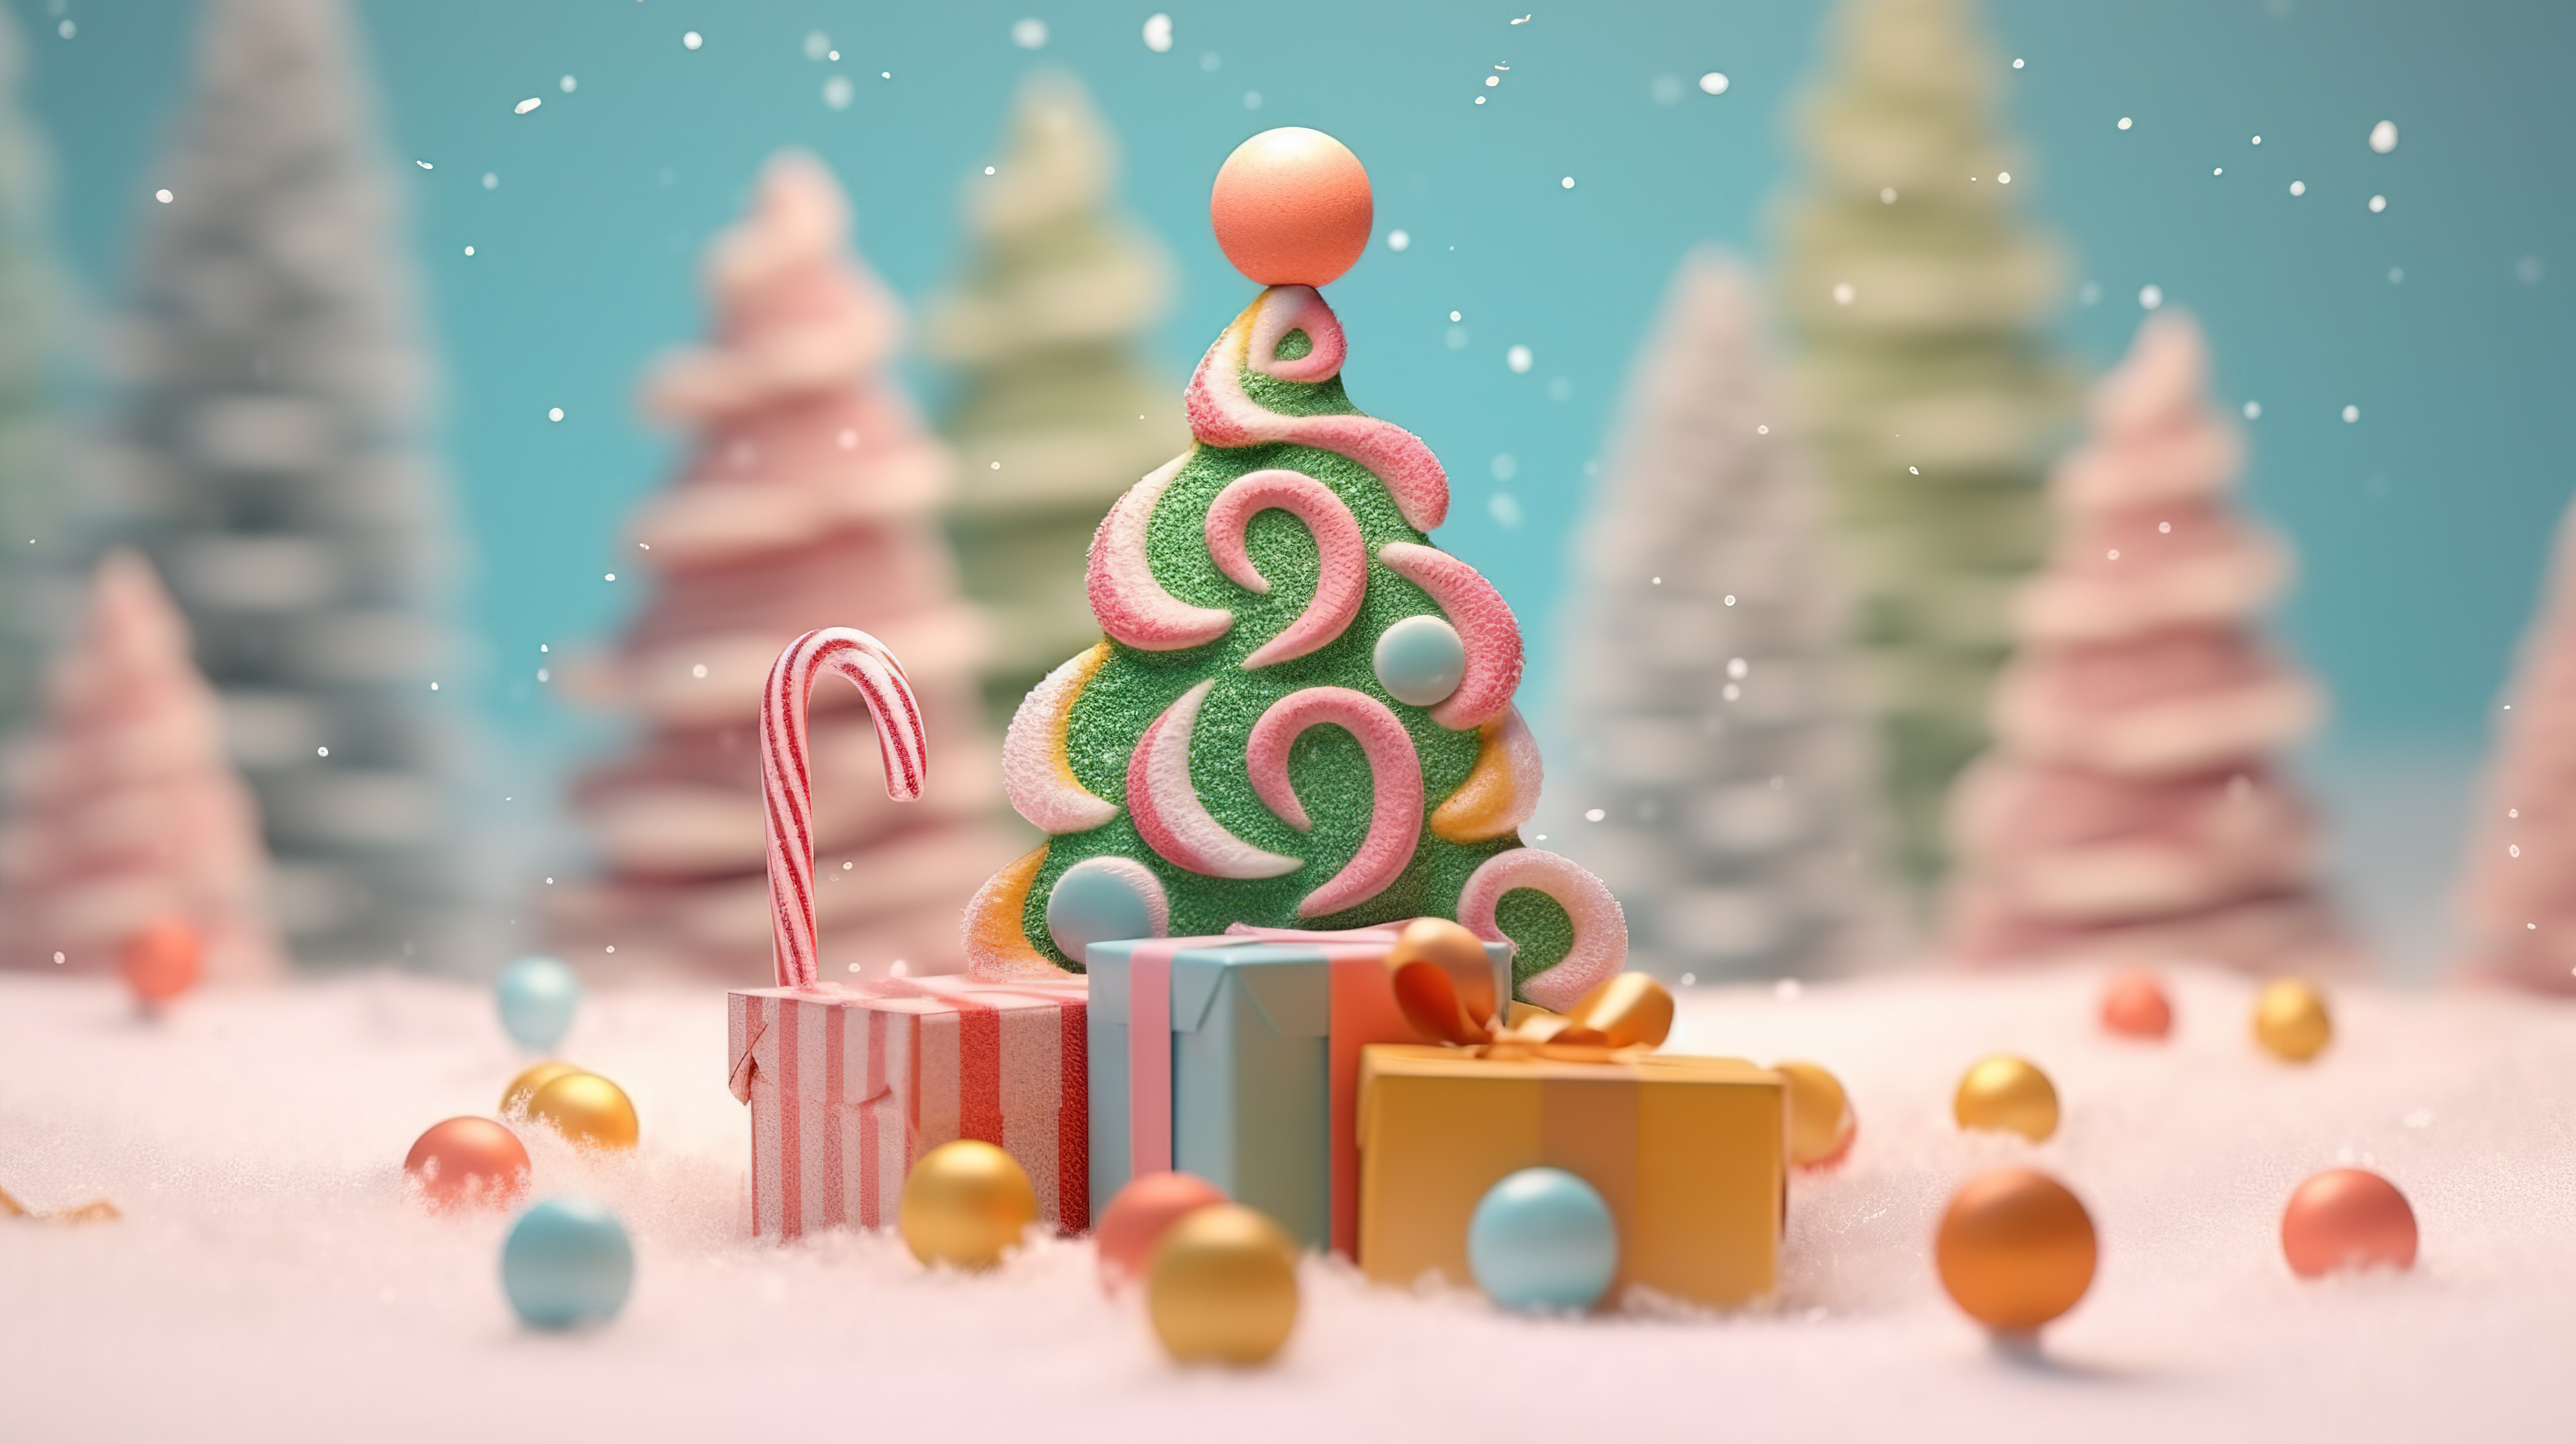 欢乐的节日雪圣诞树和糖果礼品盒在柔和的色调背景 3D 渲染图片